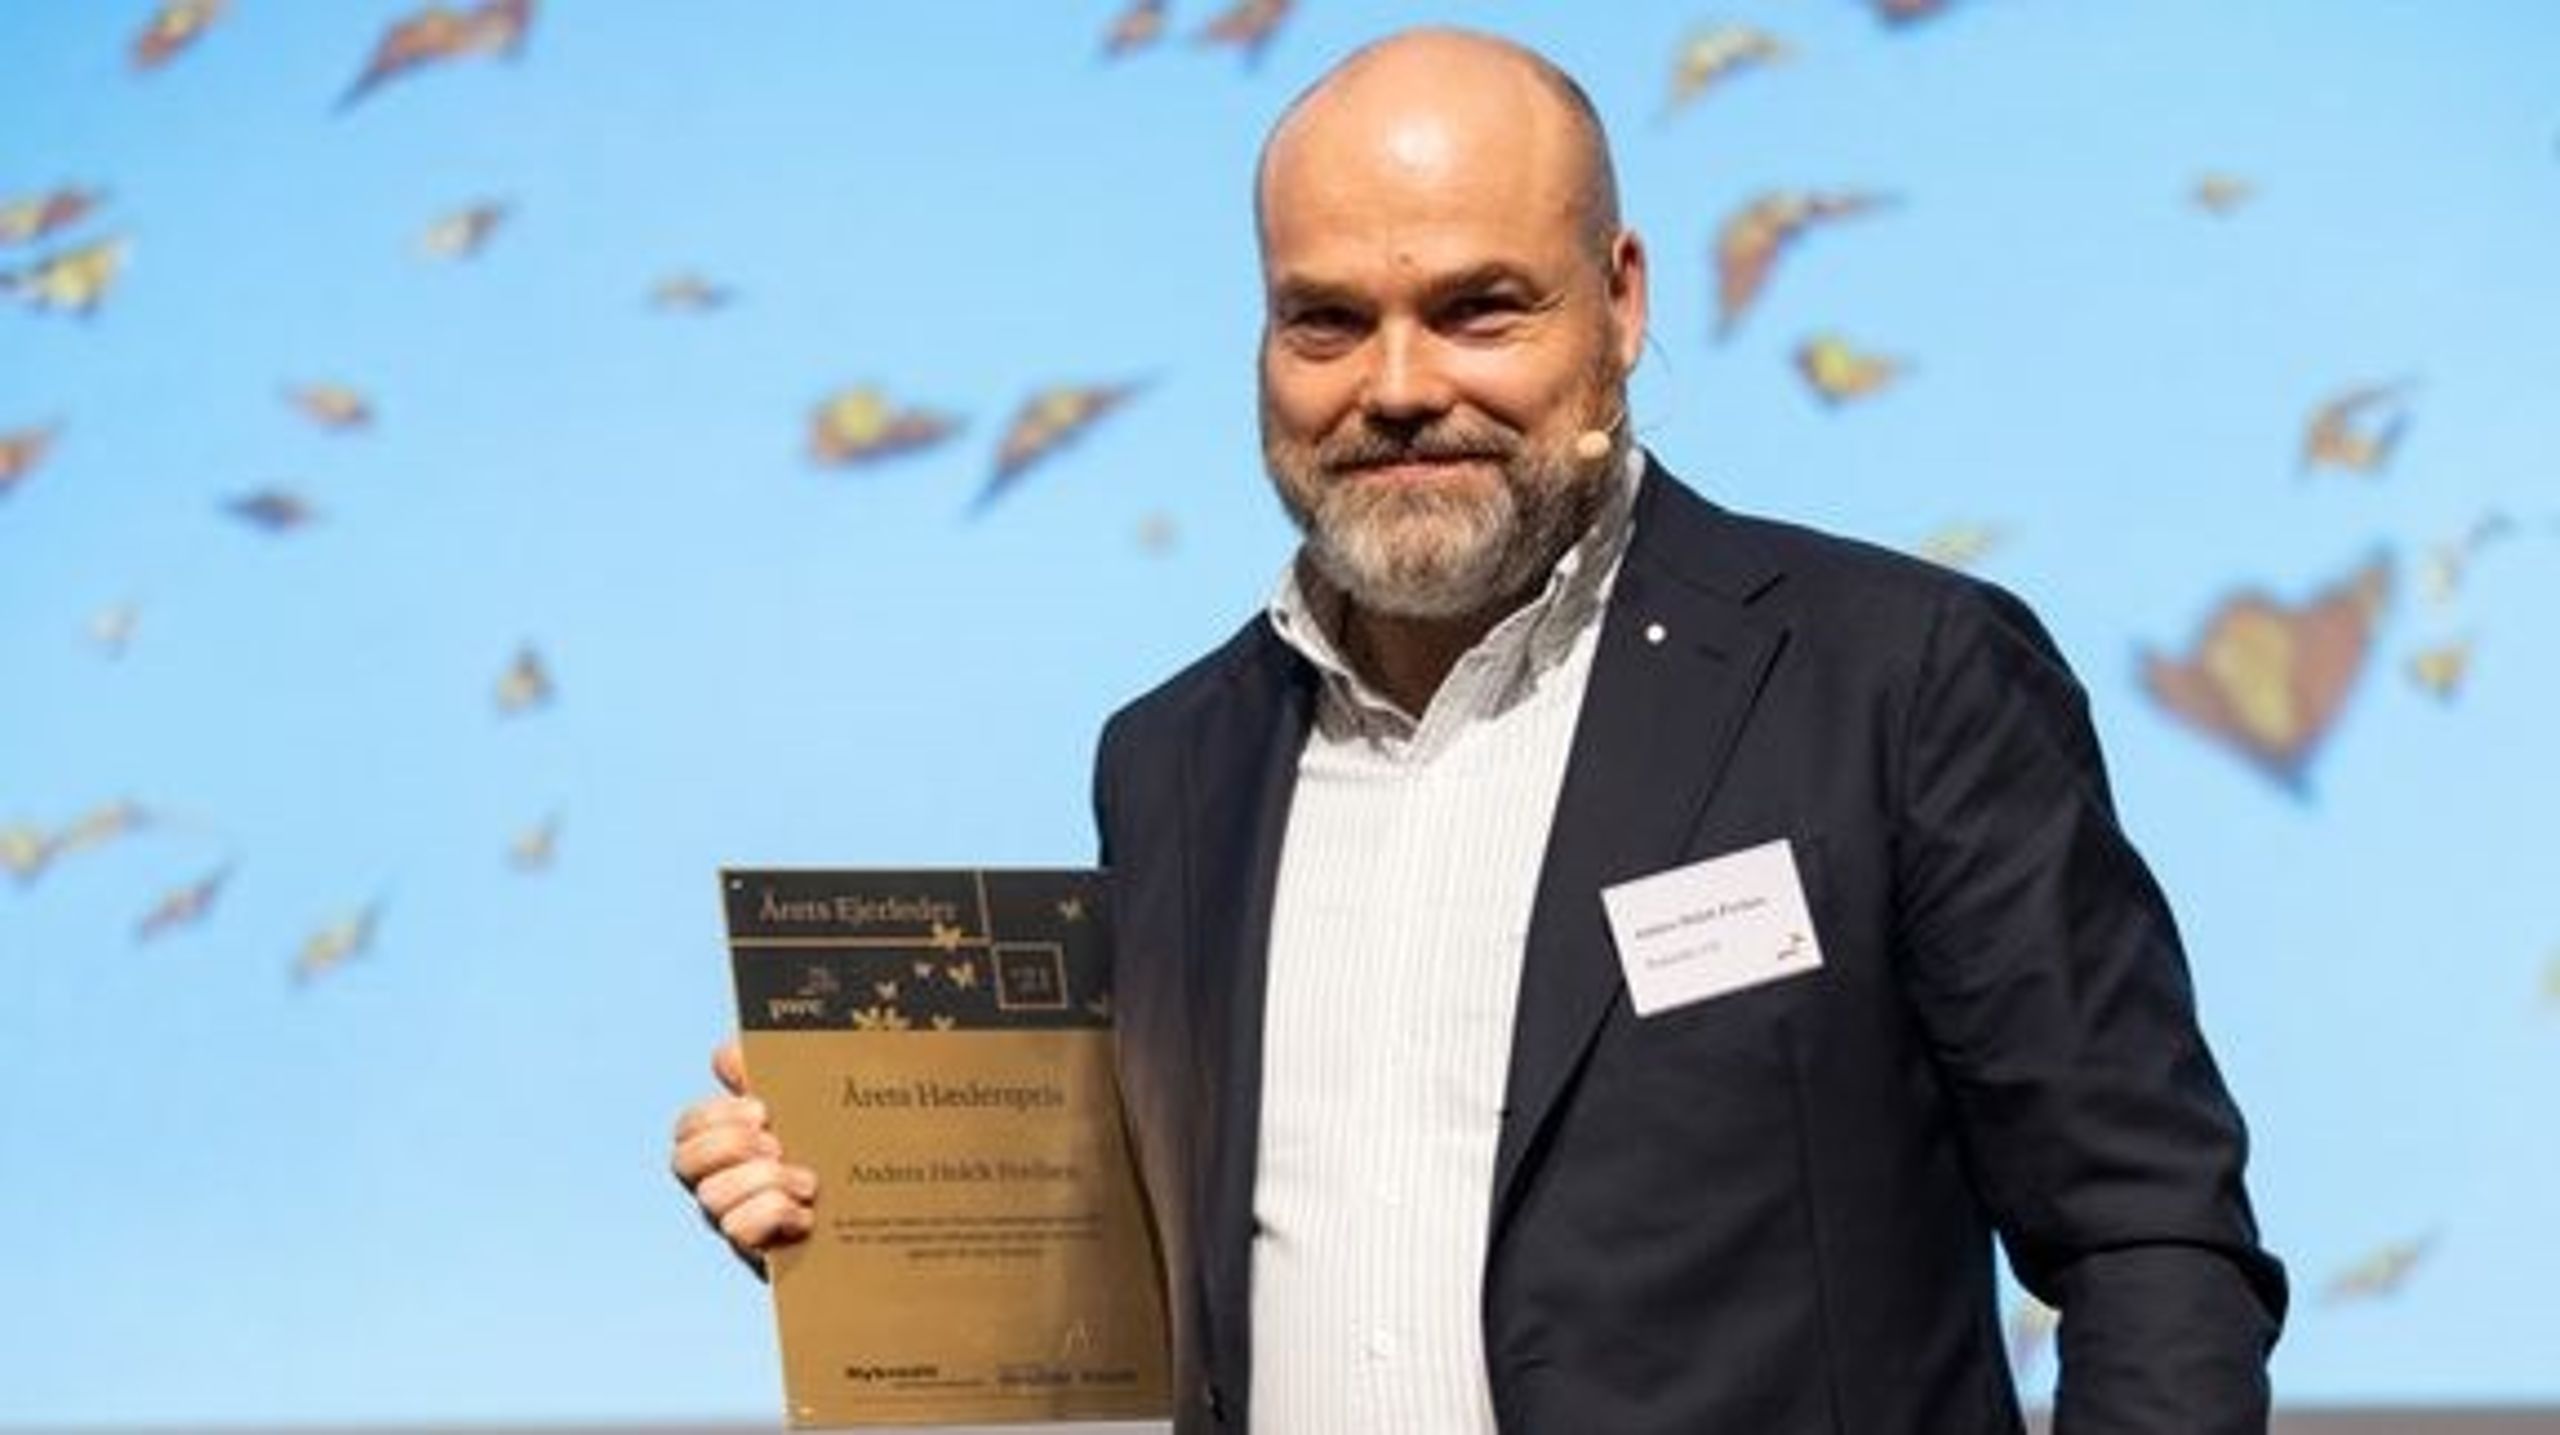 Anders Holch Povlsen vinder Årets Hæderspris 2021 til Landskåringen af Årets Ejerleder 2021 i PwC.